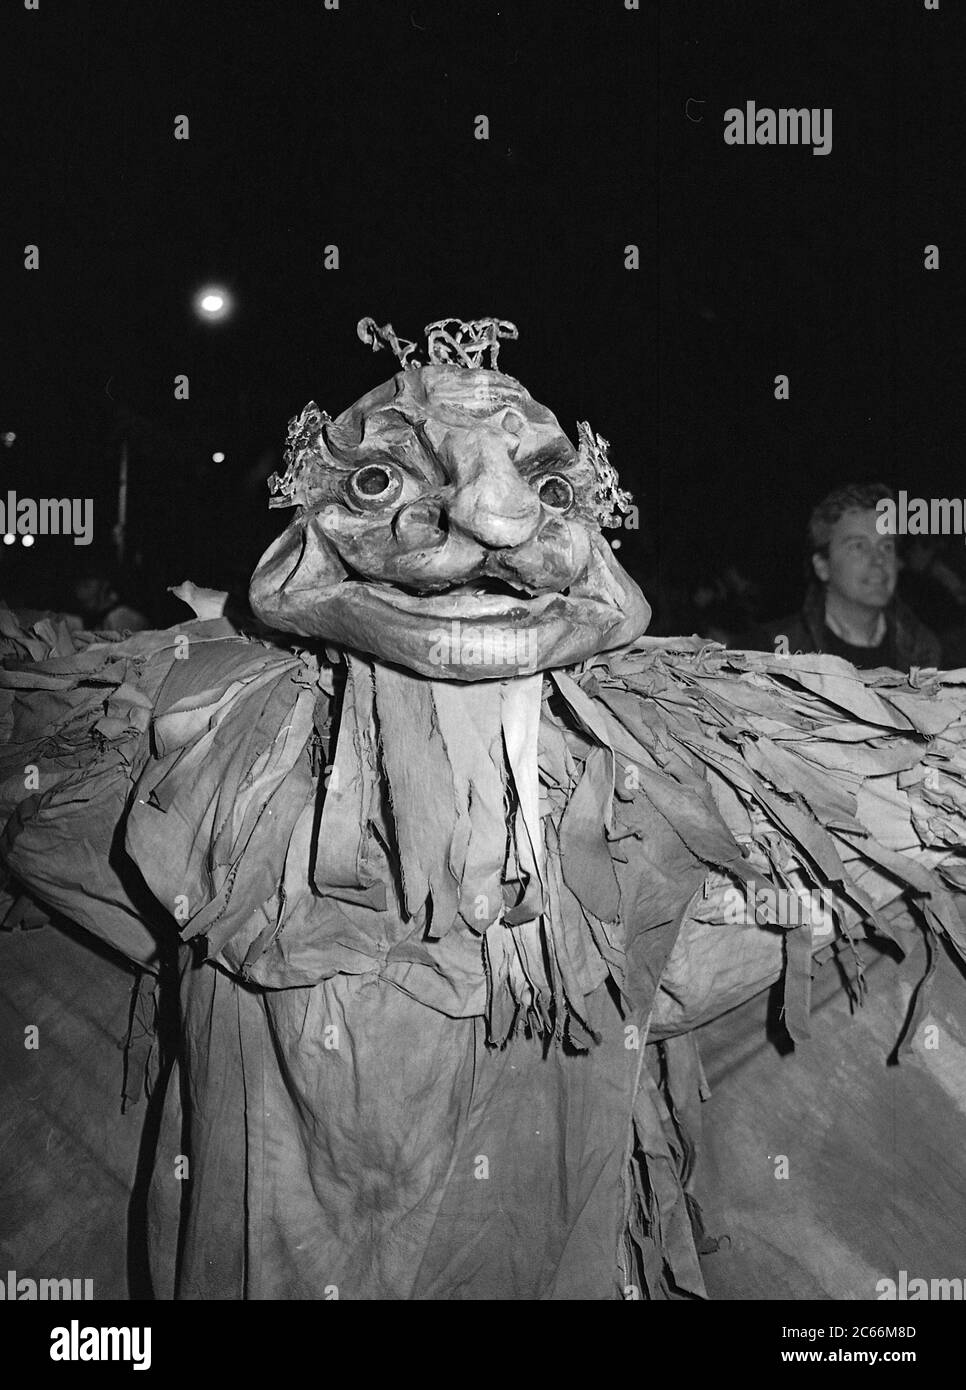 Costume creativo al Greenwich Village Halloween Parade, New York City, USA negli anni '80 fotografato con film in bianco e nero di notte. Foto Stock